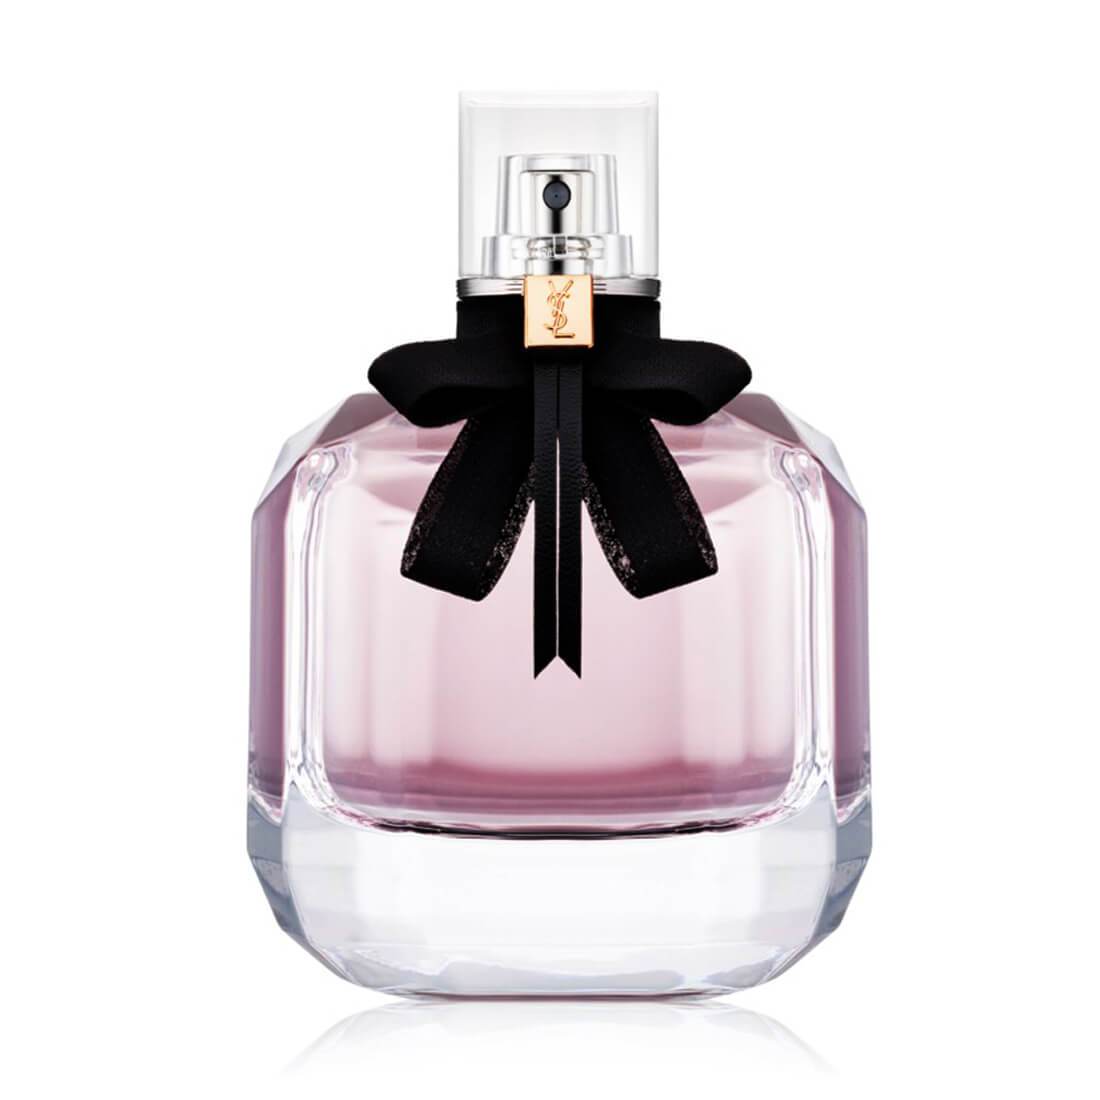 Yves Saint Laurent Mon Paris Perfume Edt For Women 90 Ml-Perfume - Allurebeautypk